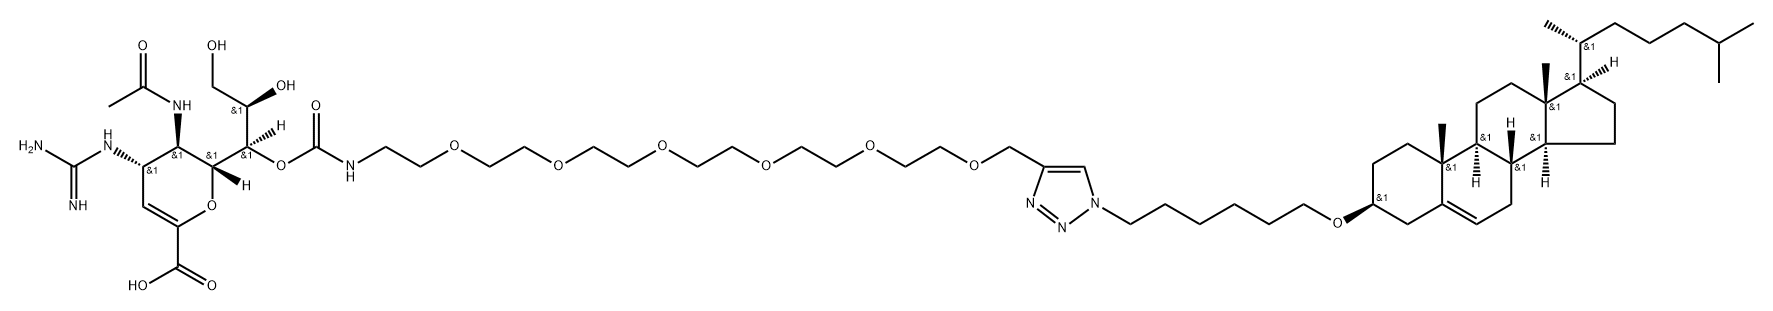 D-glycero-D-galacto-Non-2-enonic acid, 5-(acetylamino)-4-[(aminoiminomethyl)amino]-2,6-anhydro-3,4,5-trideoxy-, 7-[21-[1-[6-[(3β)-cholest-5-en-3-yloxy]hexyl]-1H-1,2,3-triazol-4-yl]-5,8,11,14,17,20-hexaoxa-2-azaheneicosanoate] Structure